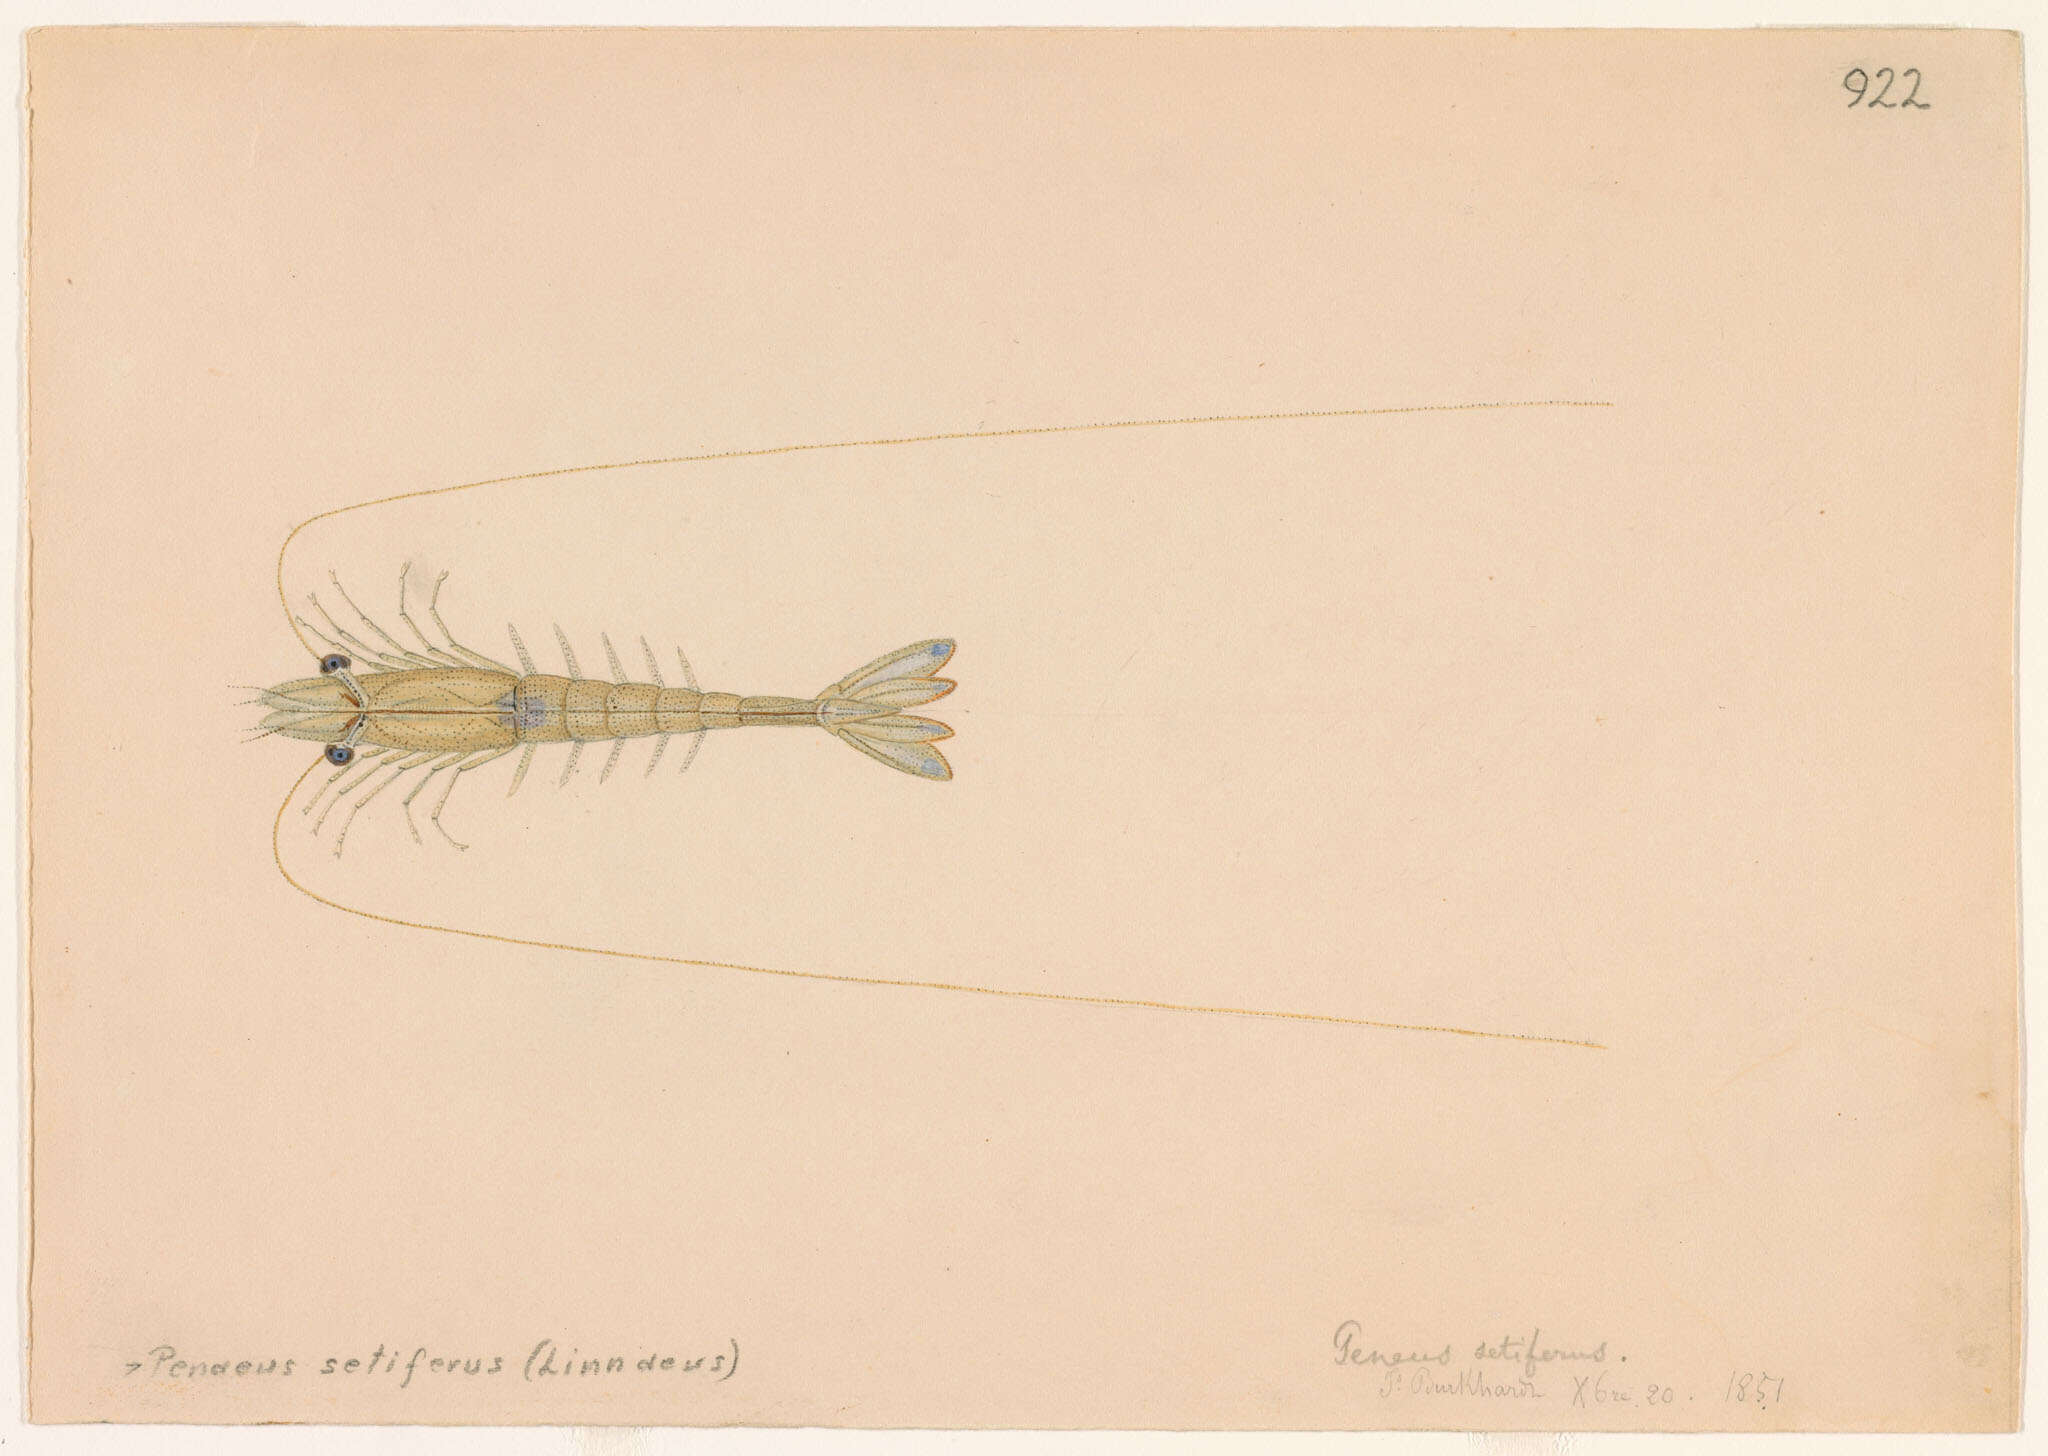 Image of prawns